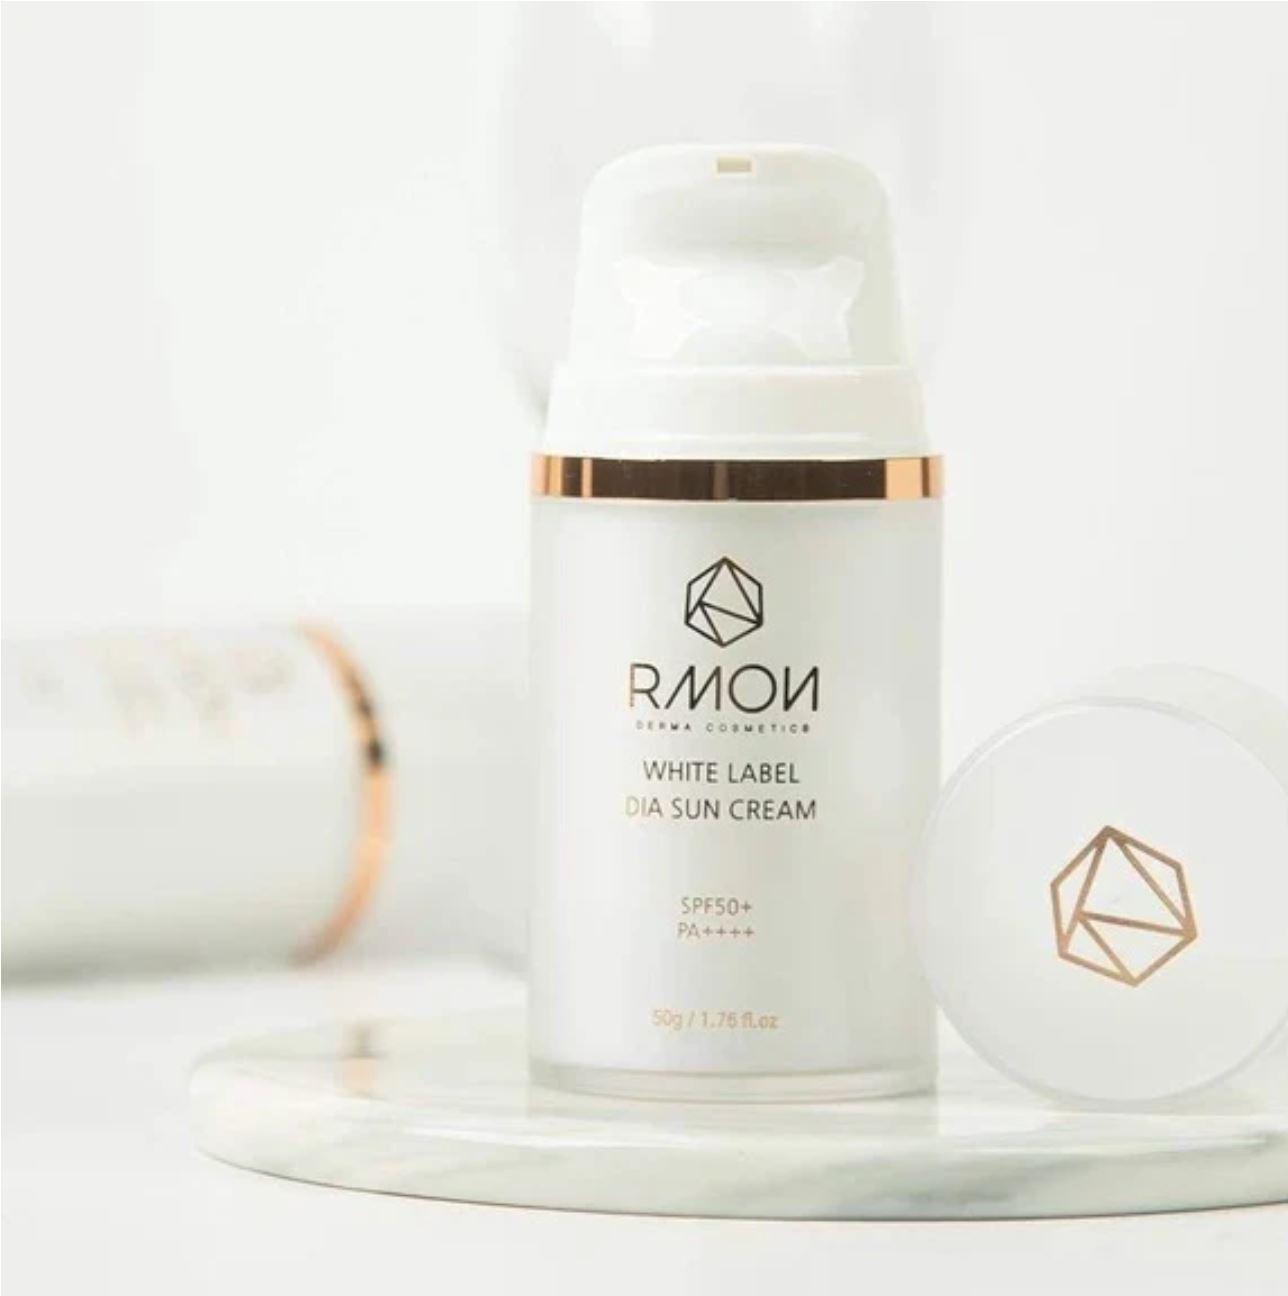 RMON White Label Dia Sun Cream SPF50+ PA++++ 50g